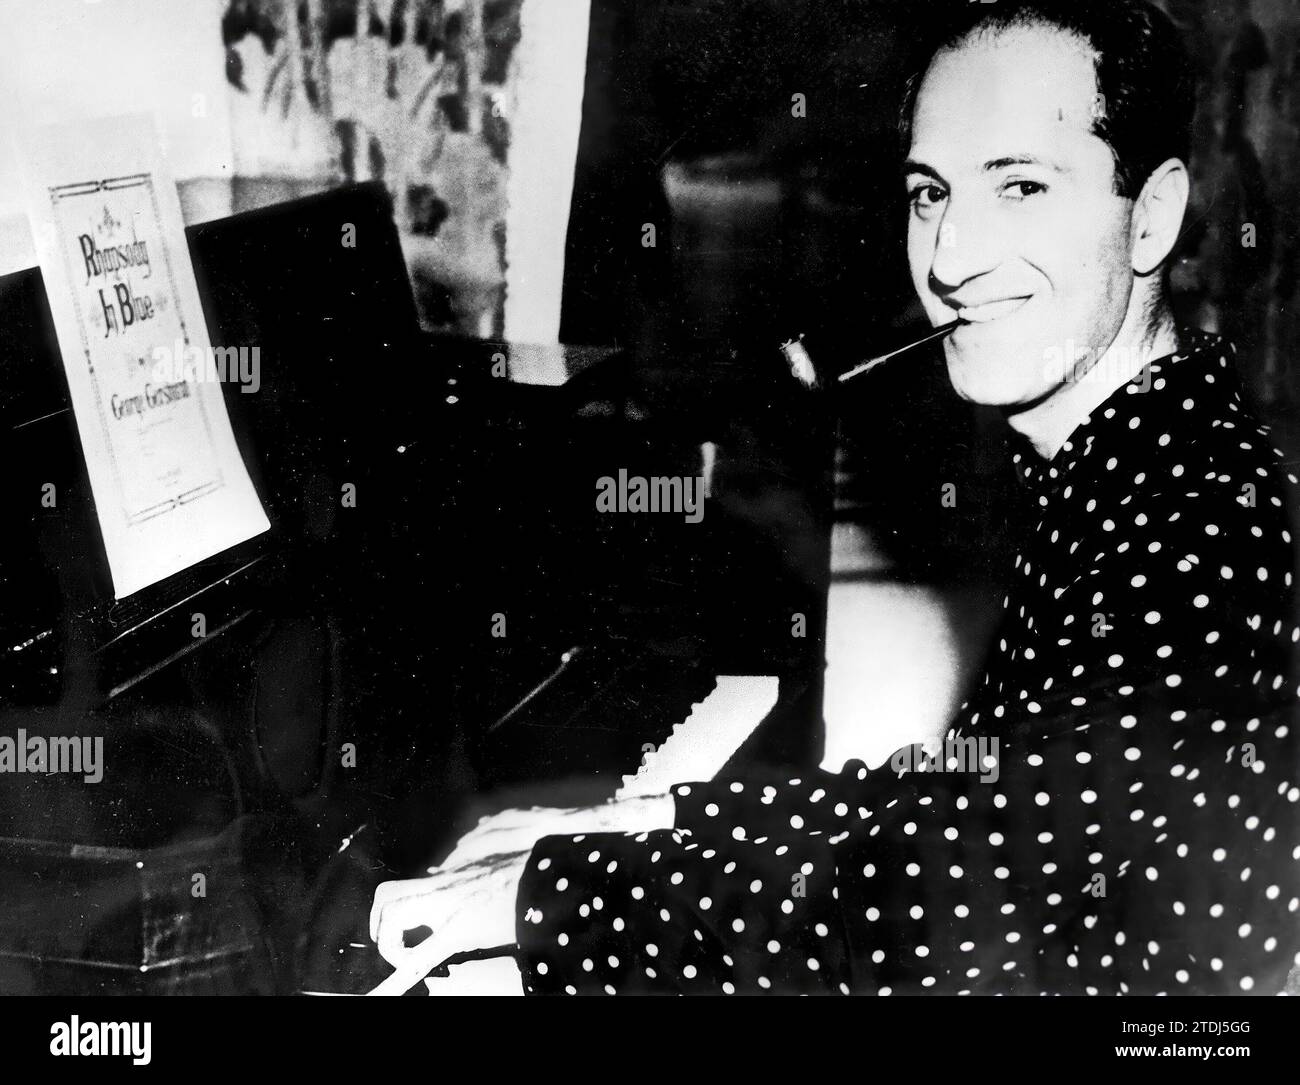 En Seattle, (Washington), en 1936, el famoso compositor estadounidense GEORGE GERSHWIN practica su famosa 'Rhapsody in Blue' en el piano. Crédito: Álbum / Archivo ABC / Zardoya Foto de stock